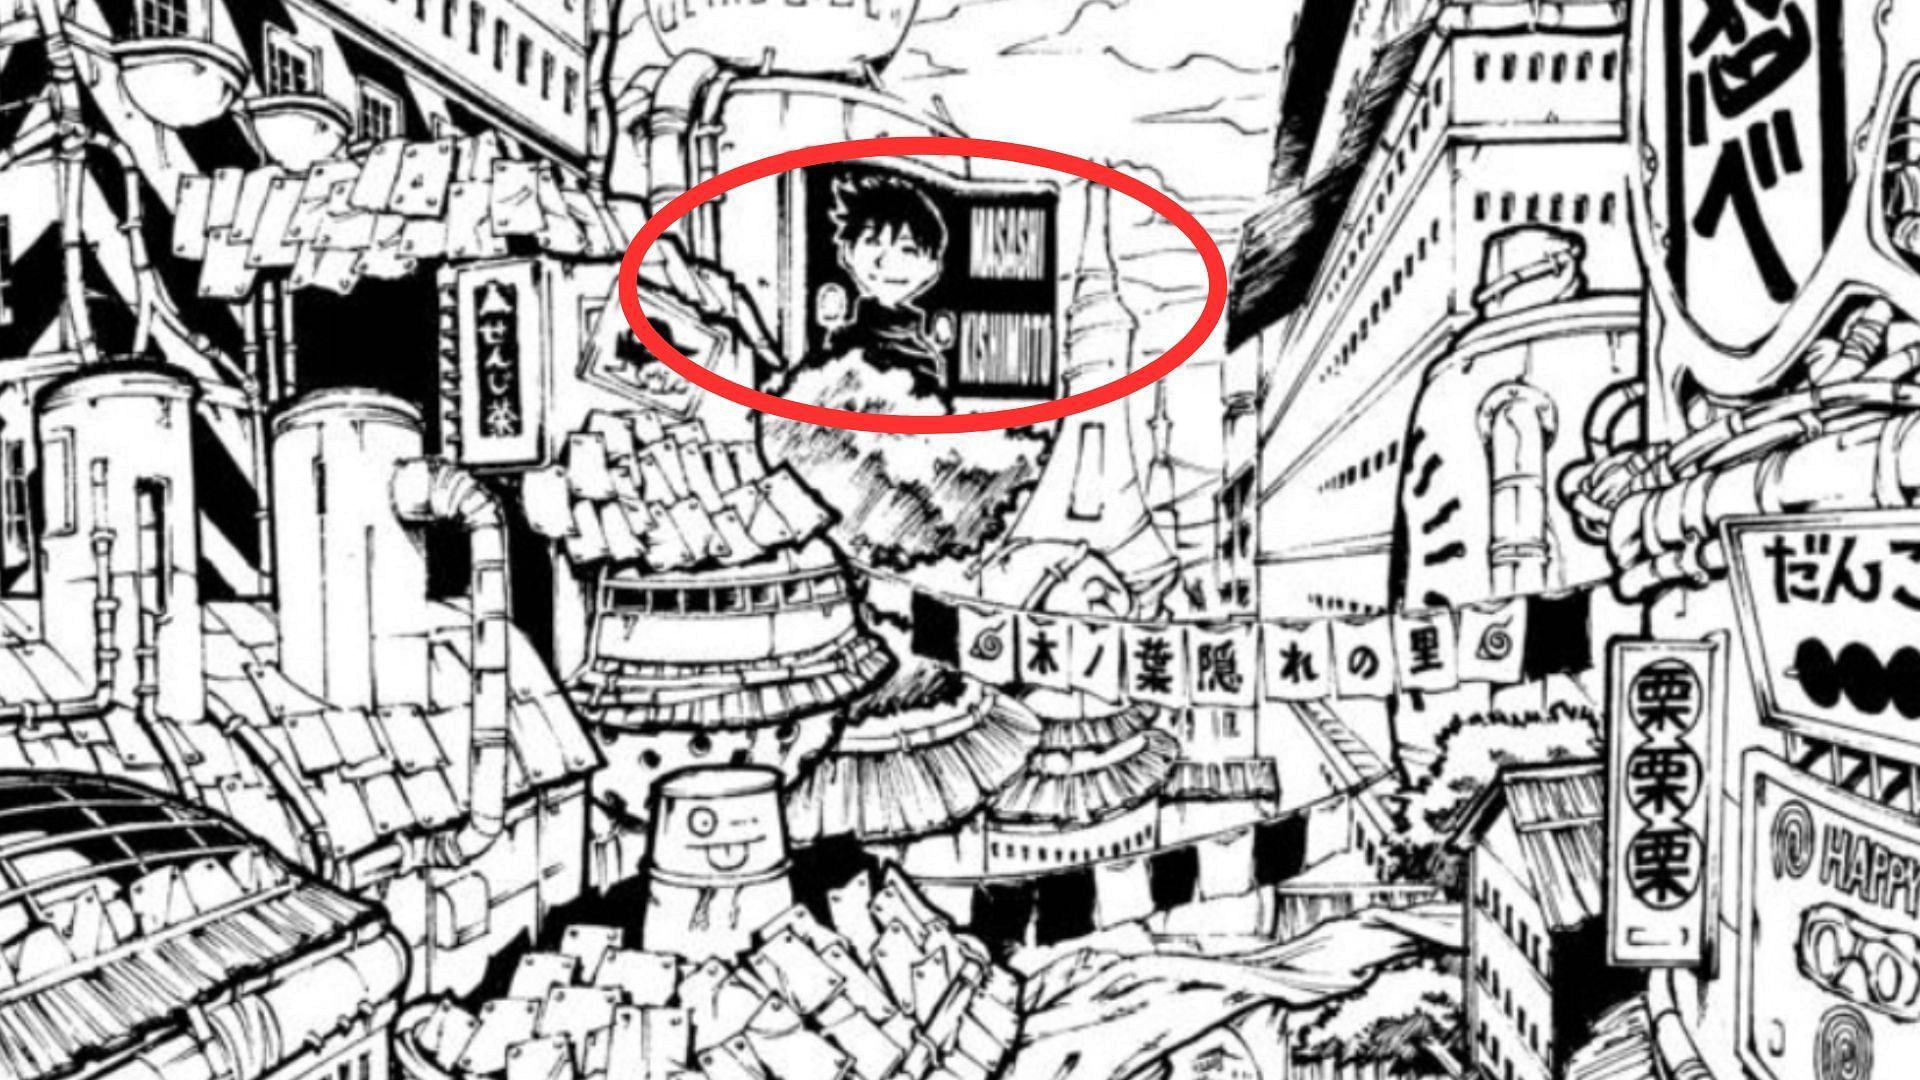 Masashi Kishimoto&#039;s billboard in the manga&#039;s 3rd chapter (Image via Shueisha)